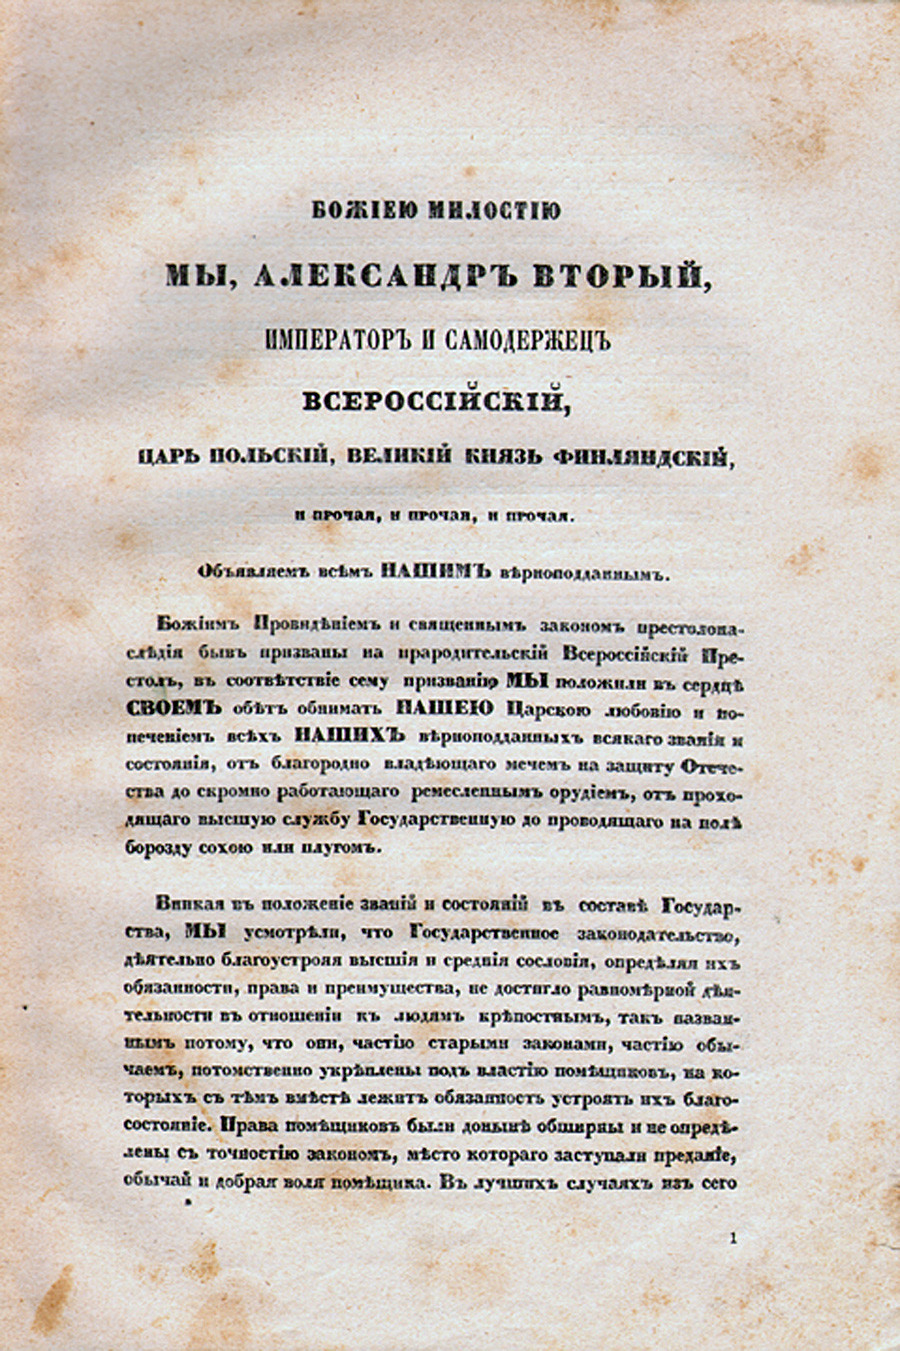 Факсимил манифеста од 19. фебруара 1861. године према издању „Велика реформа“, 1911.